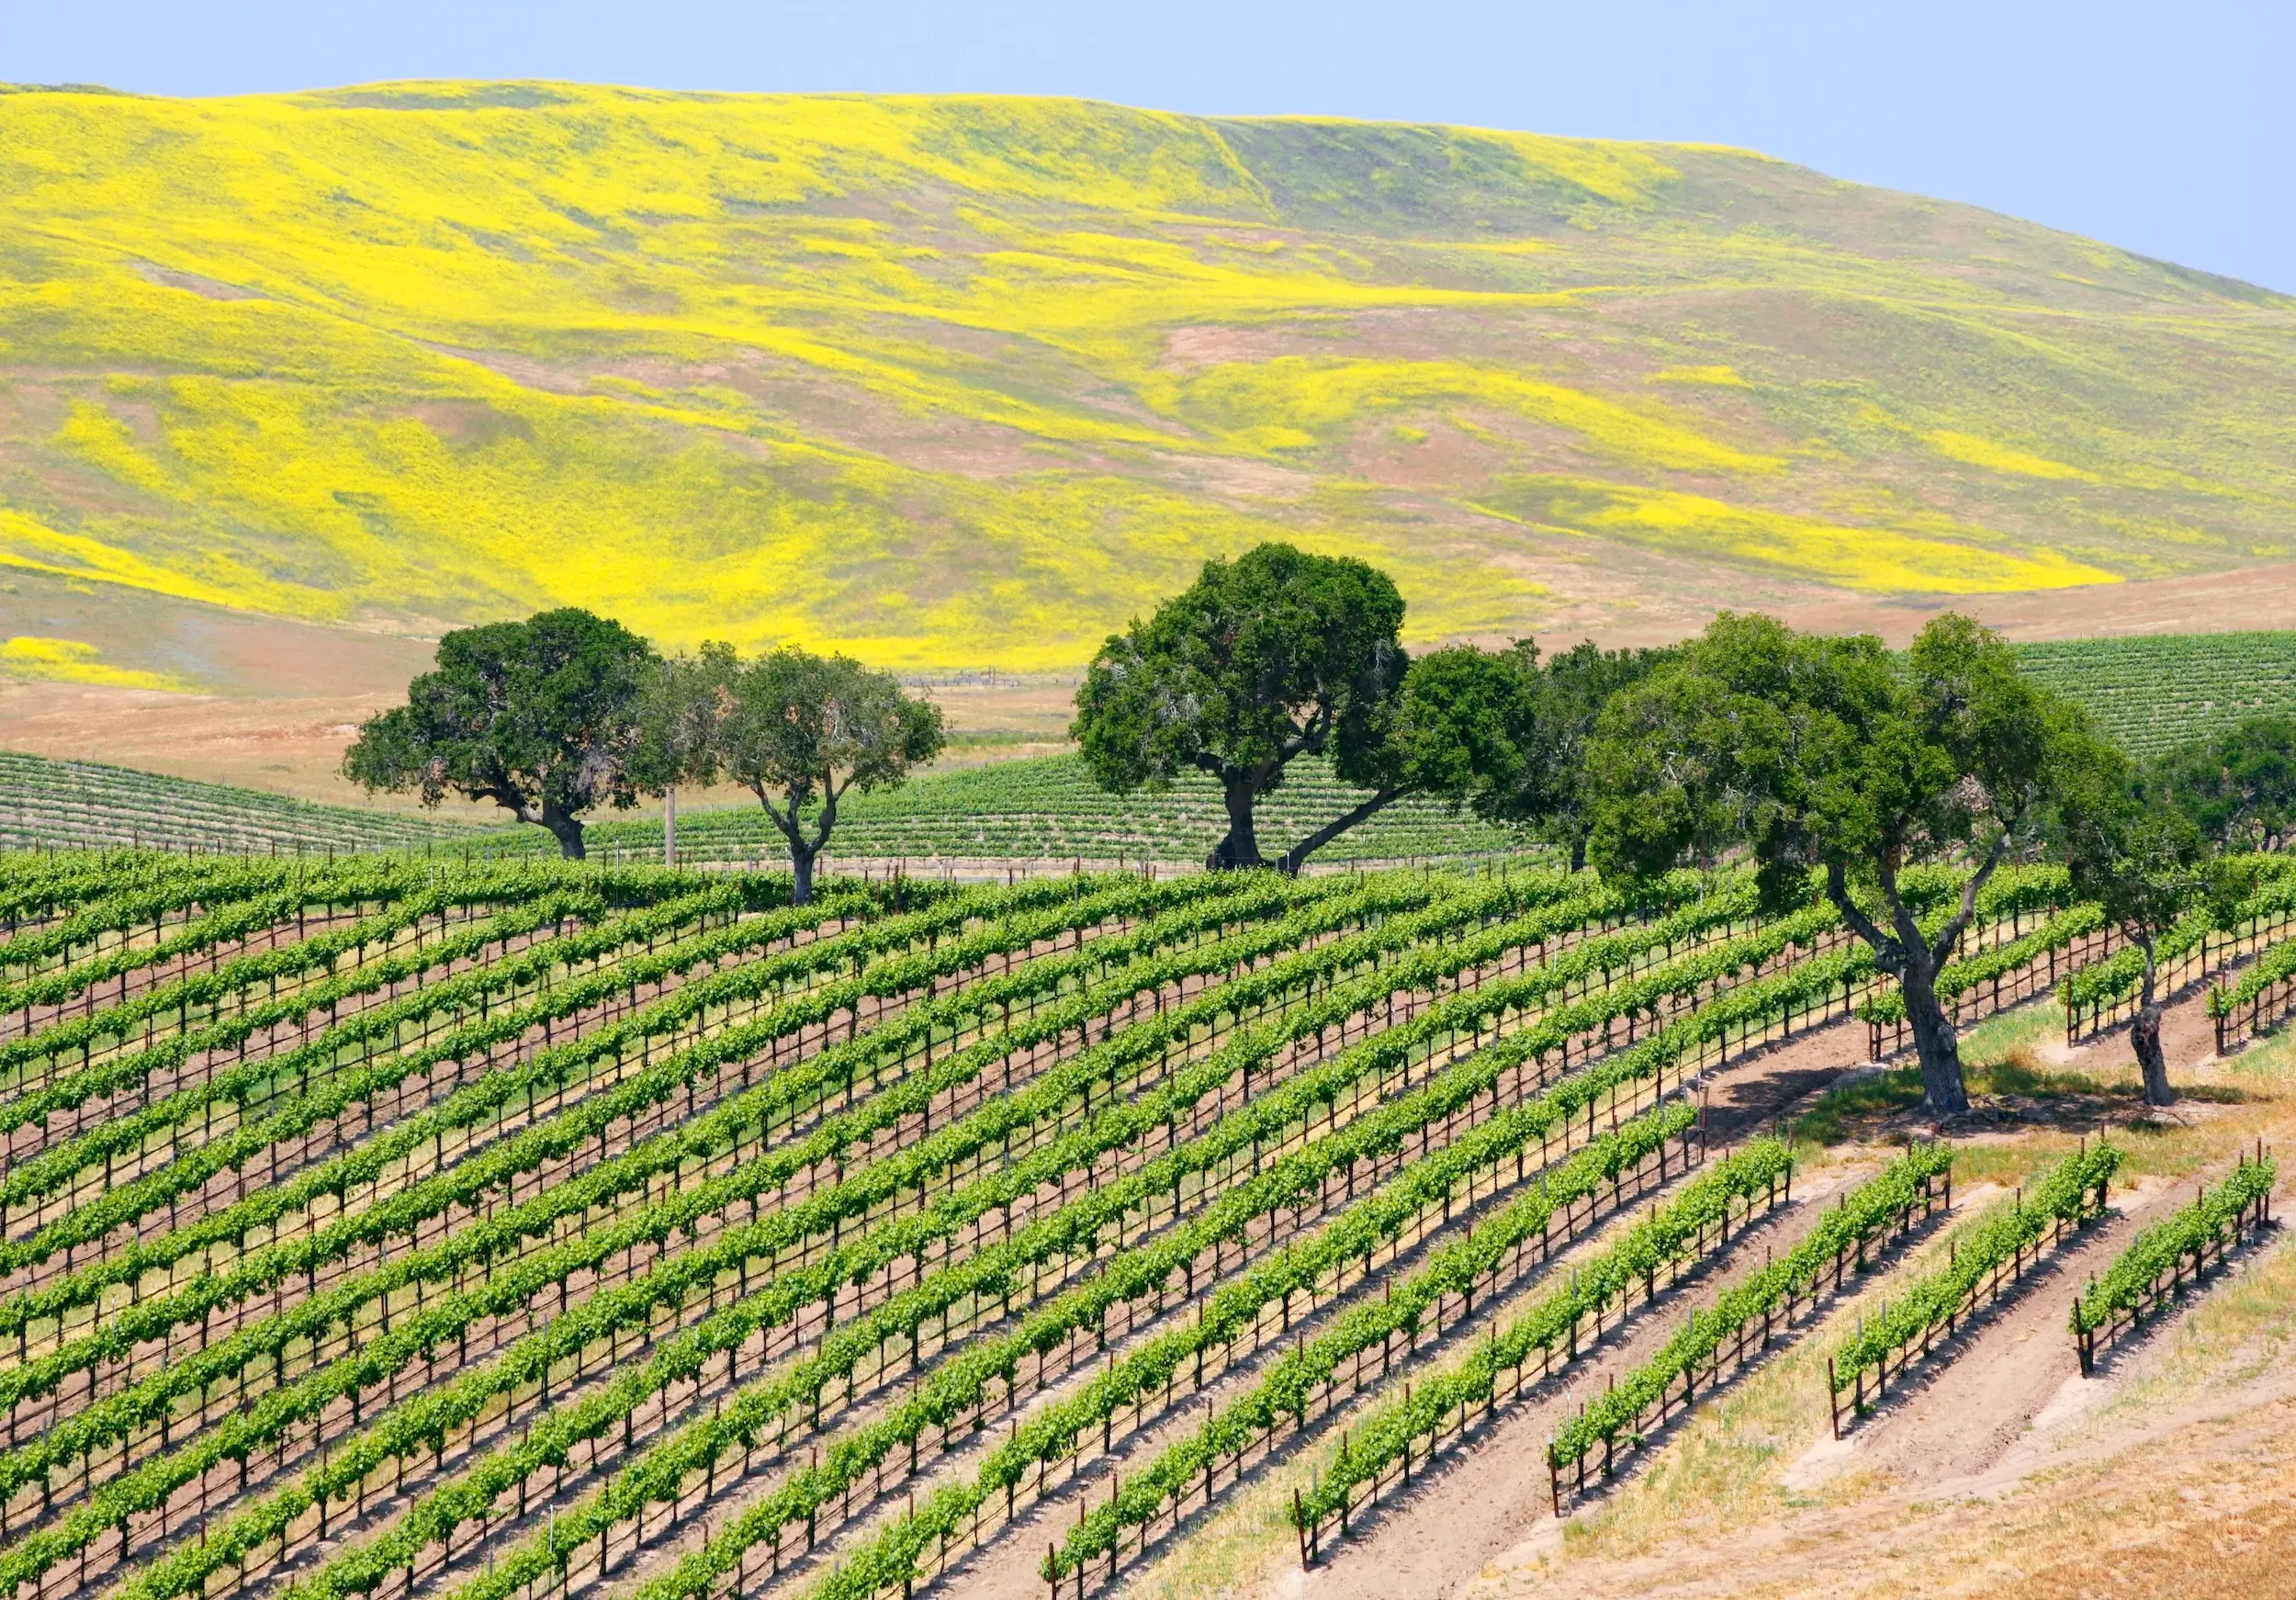 A wine vineyard near Santa Barbara, California